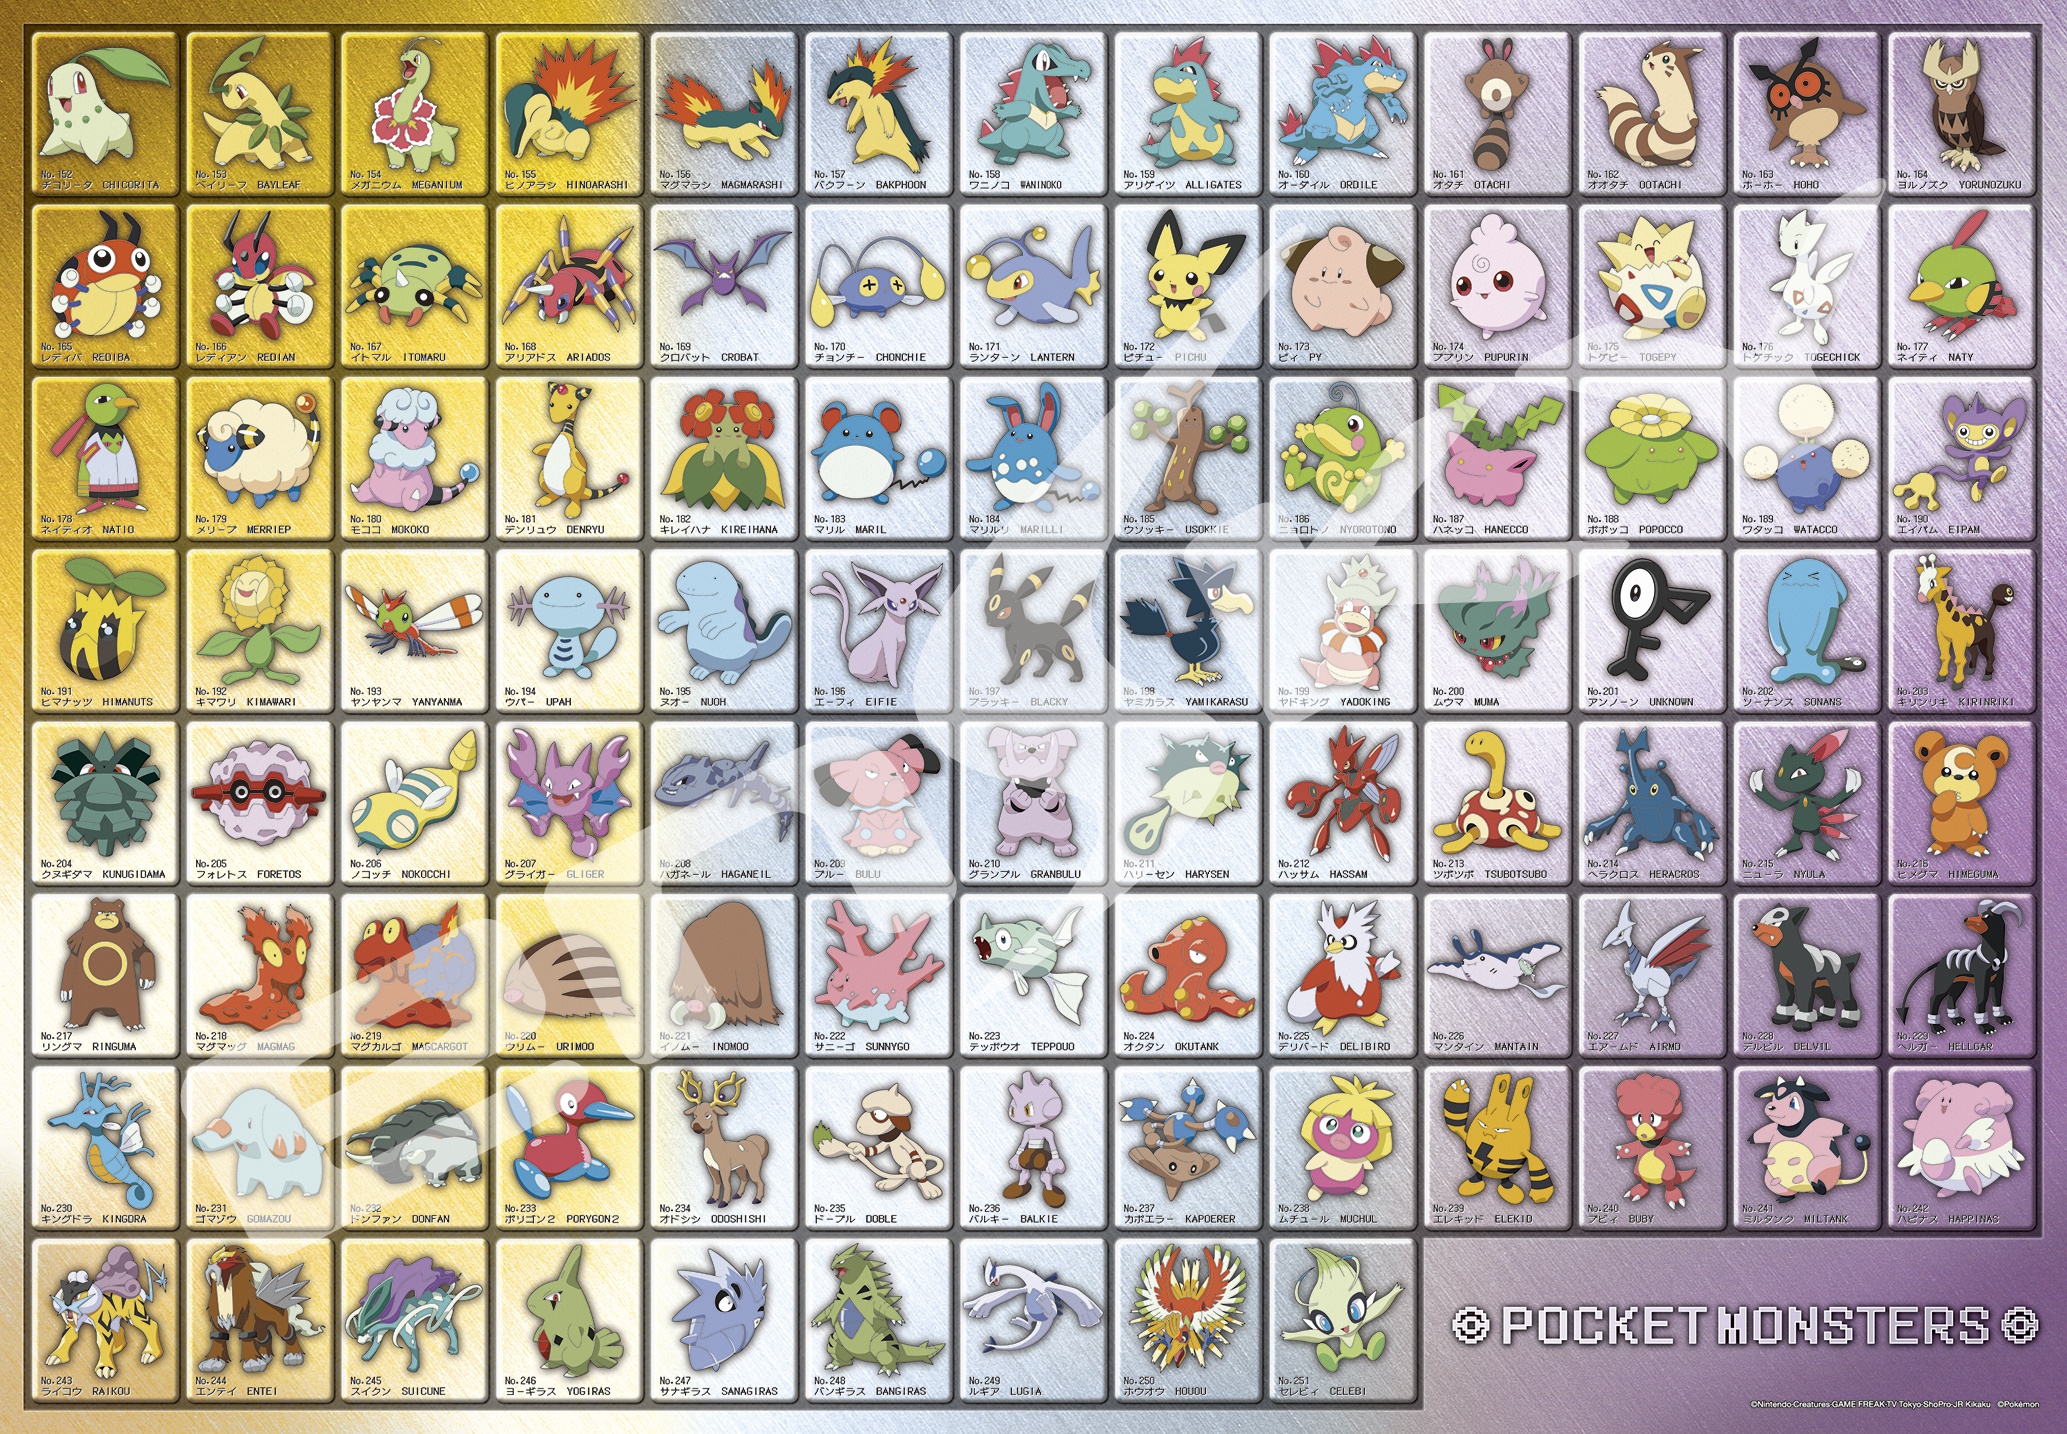 Origem dos Nomes dos Pokémon - 2ª Geração (#152 - #251)